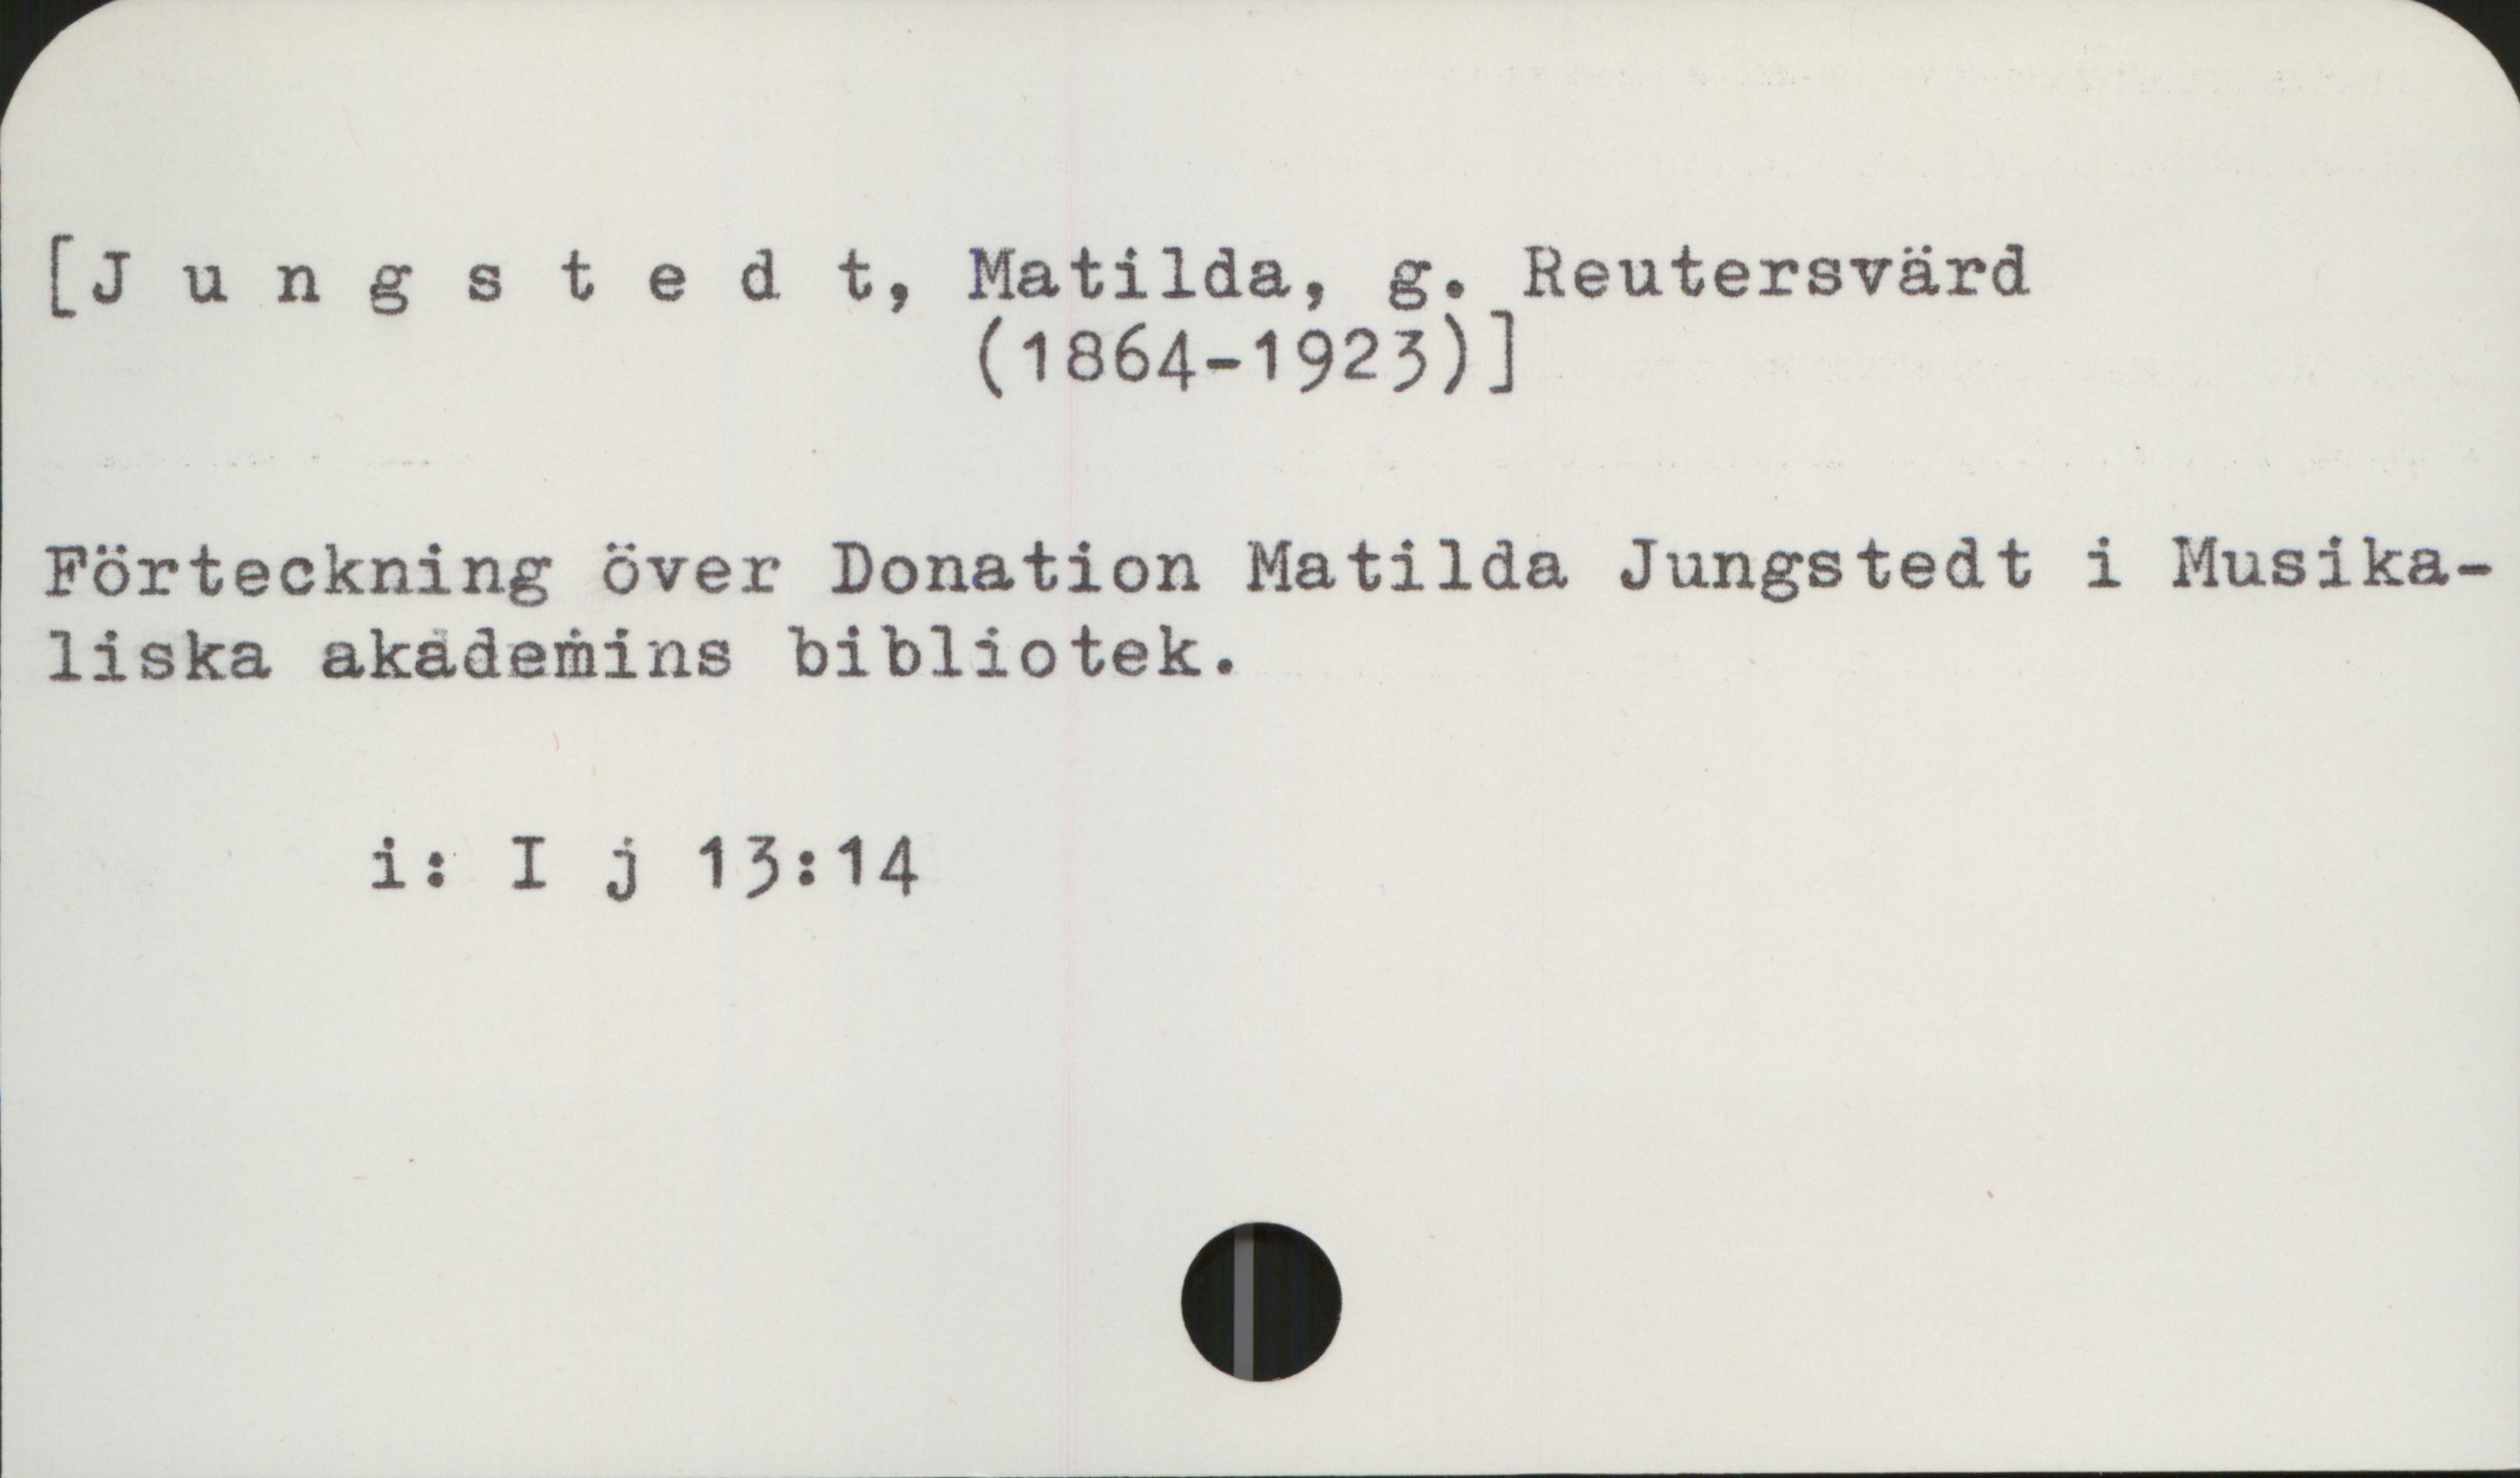 Jungstedt, Matilda (1864-1923) [Jungstedt, Matilda, g. Reutersvärd
                      (1864-1923) ]

Förteckning över Donation Matilda Jungstedt i Musikaliska
akademins bibliotek

        i: I j 13: 14